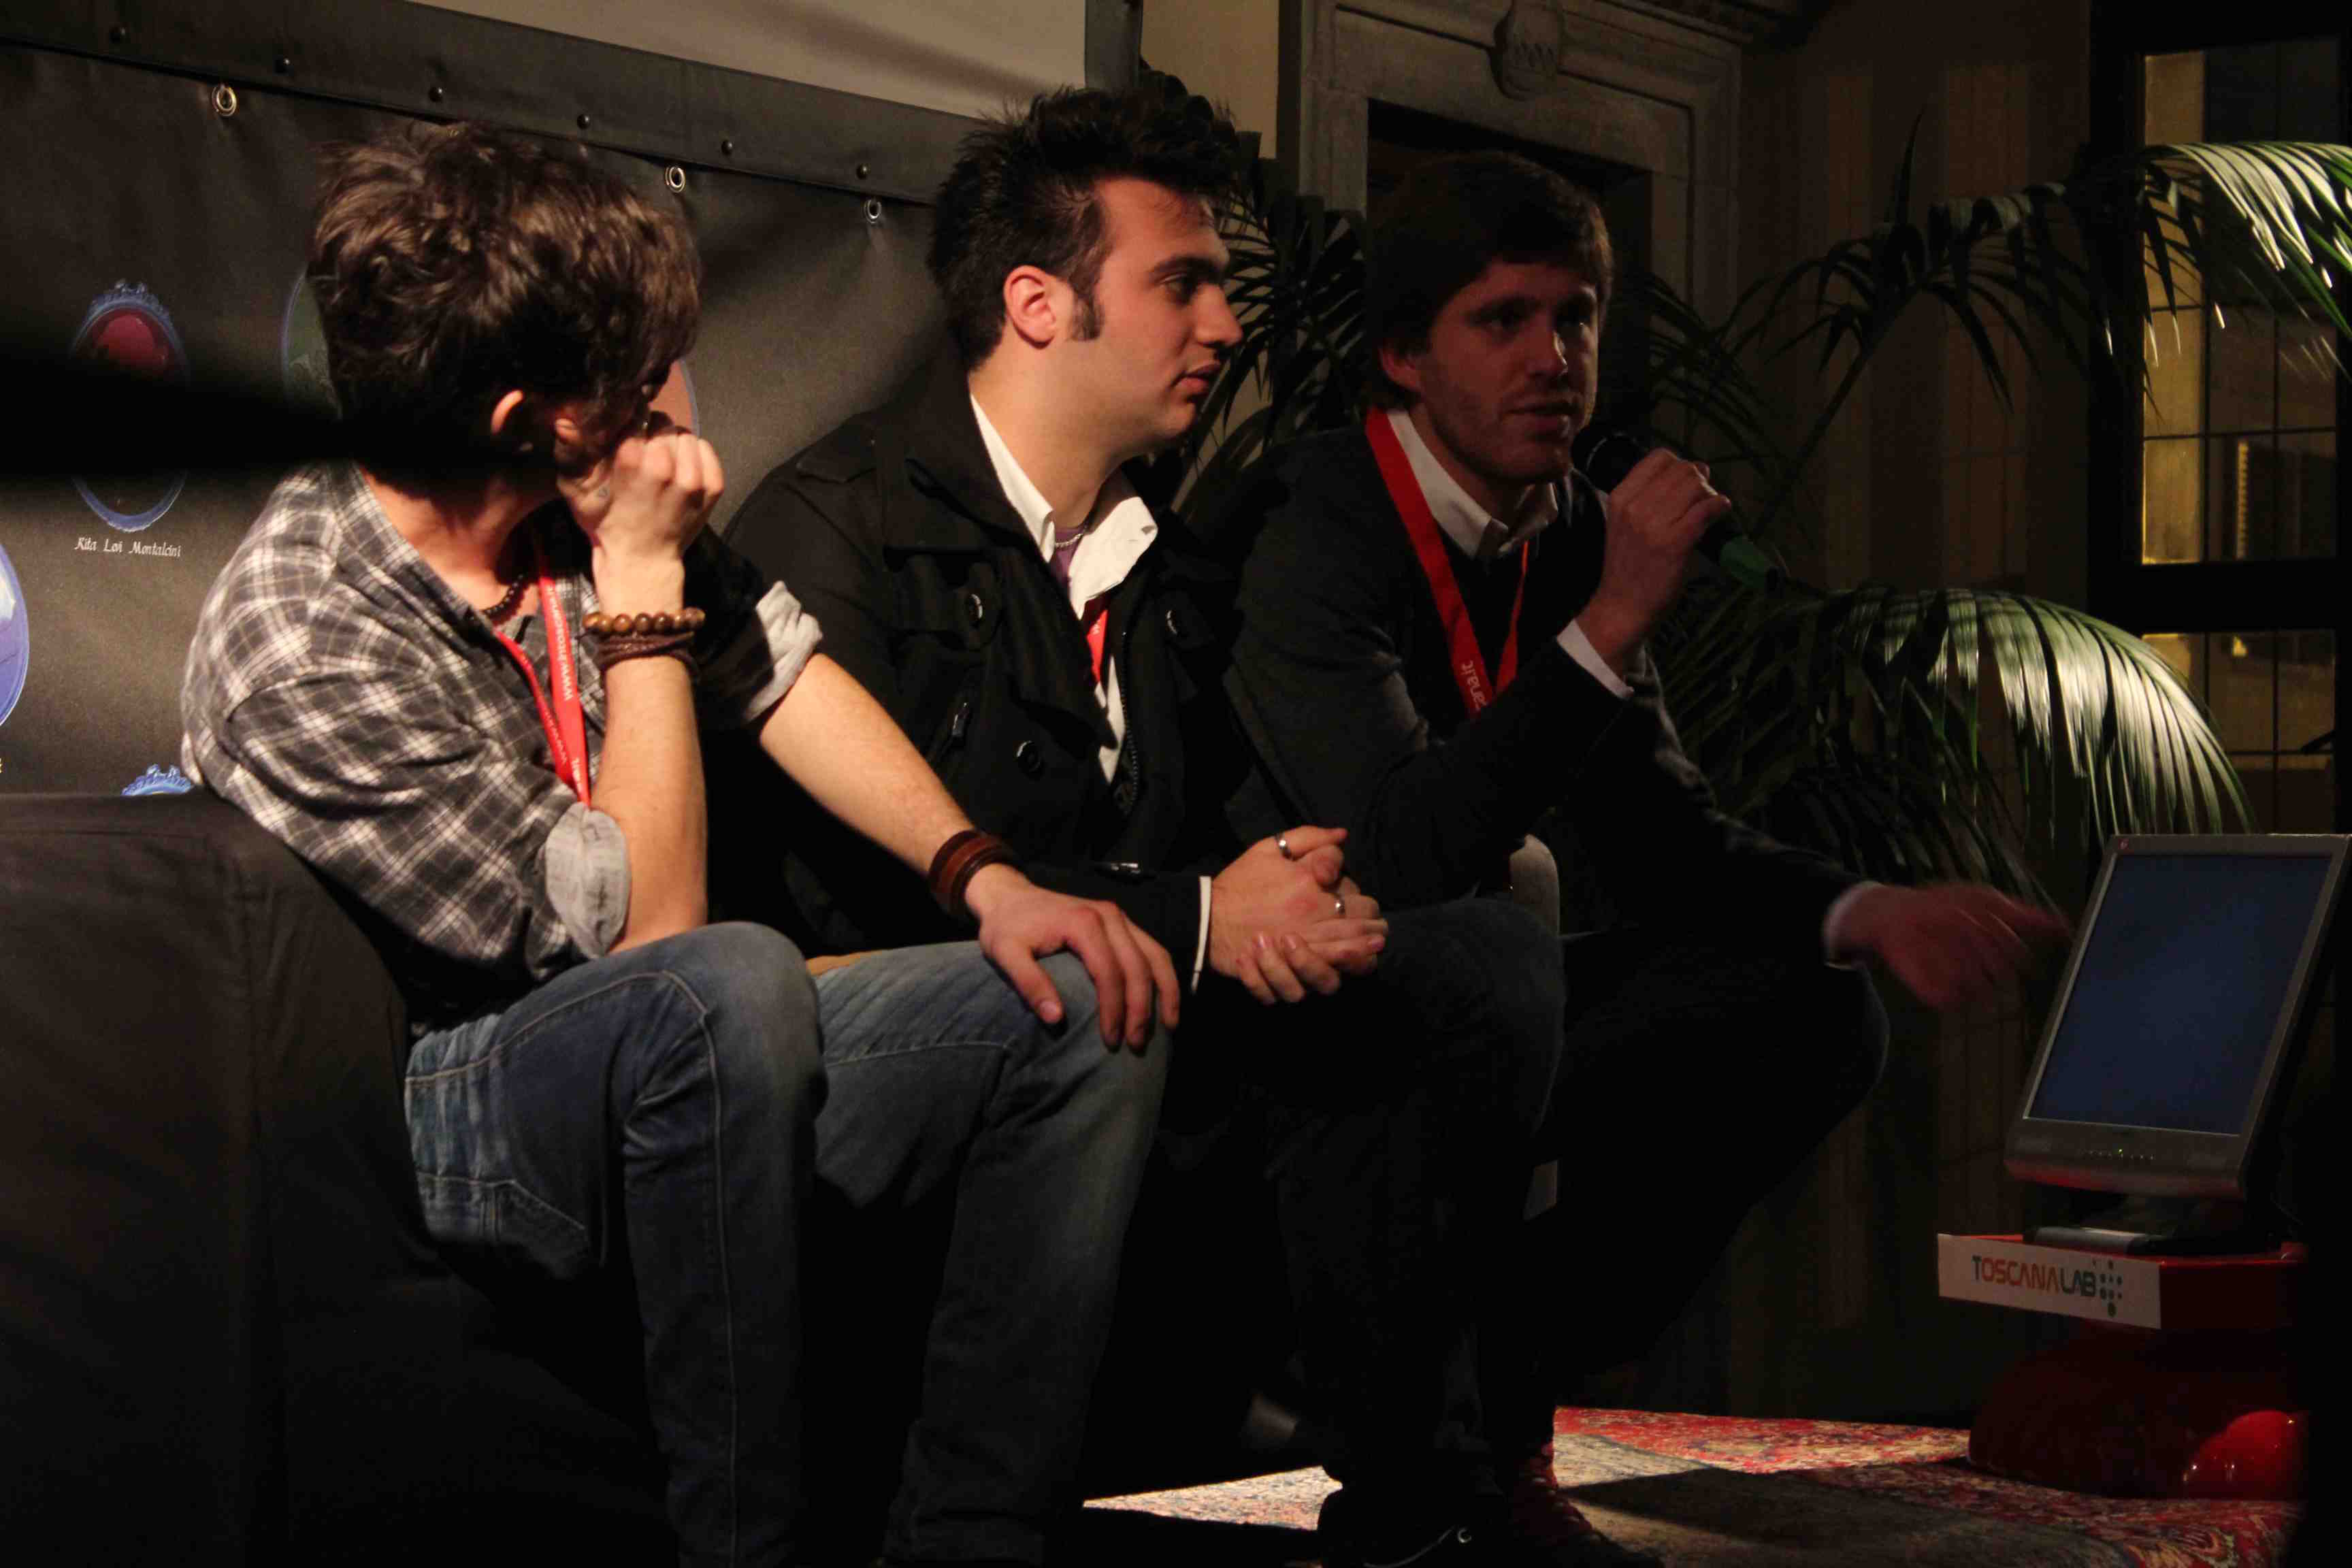 Pierfrancesco Bigazzi, Rossano Dalla Barba and Marco Sani at Presente/Futuro #generazioni2.0@valdarno 2011